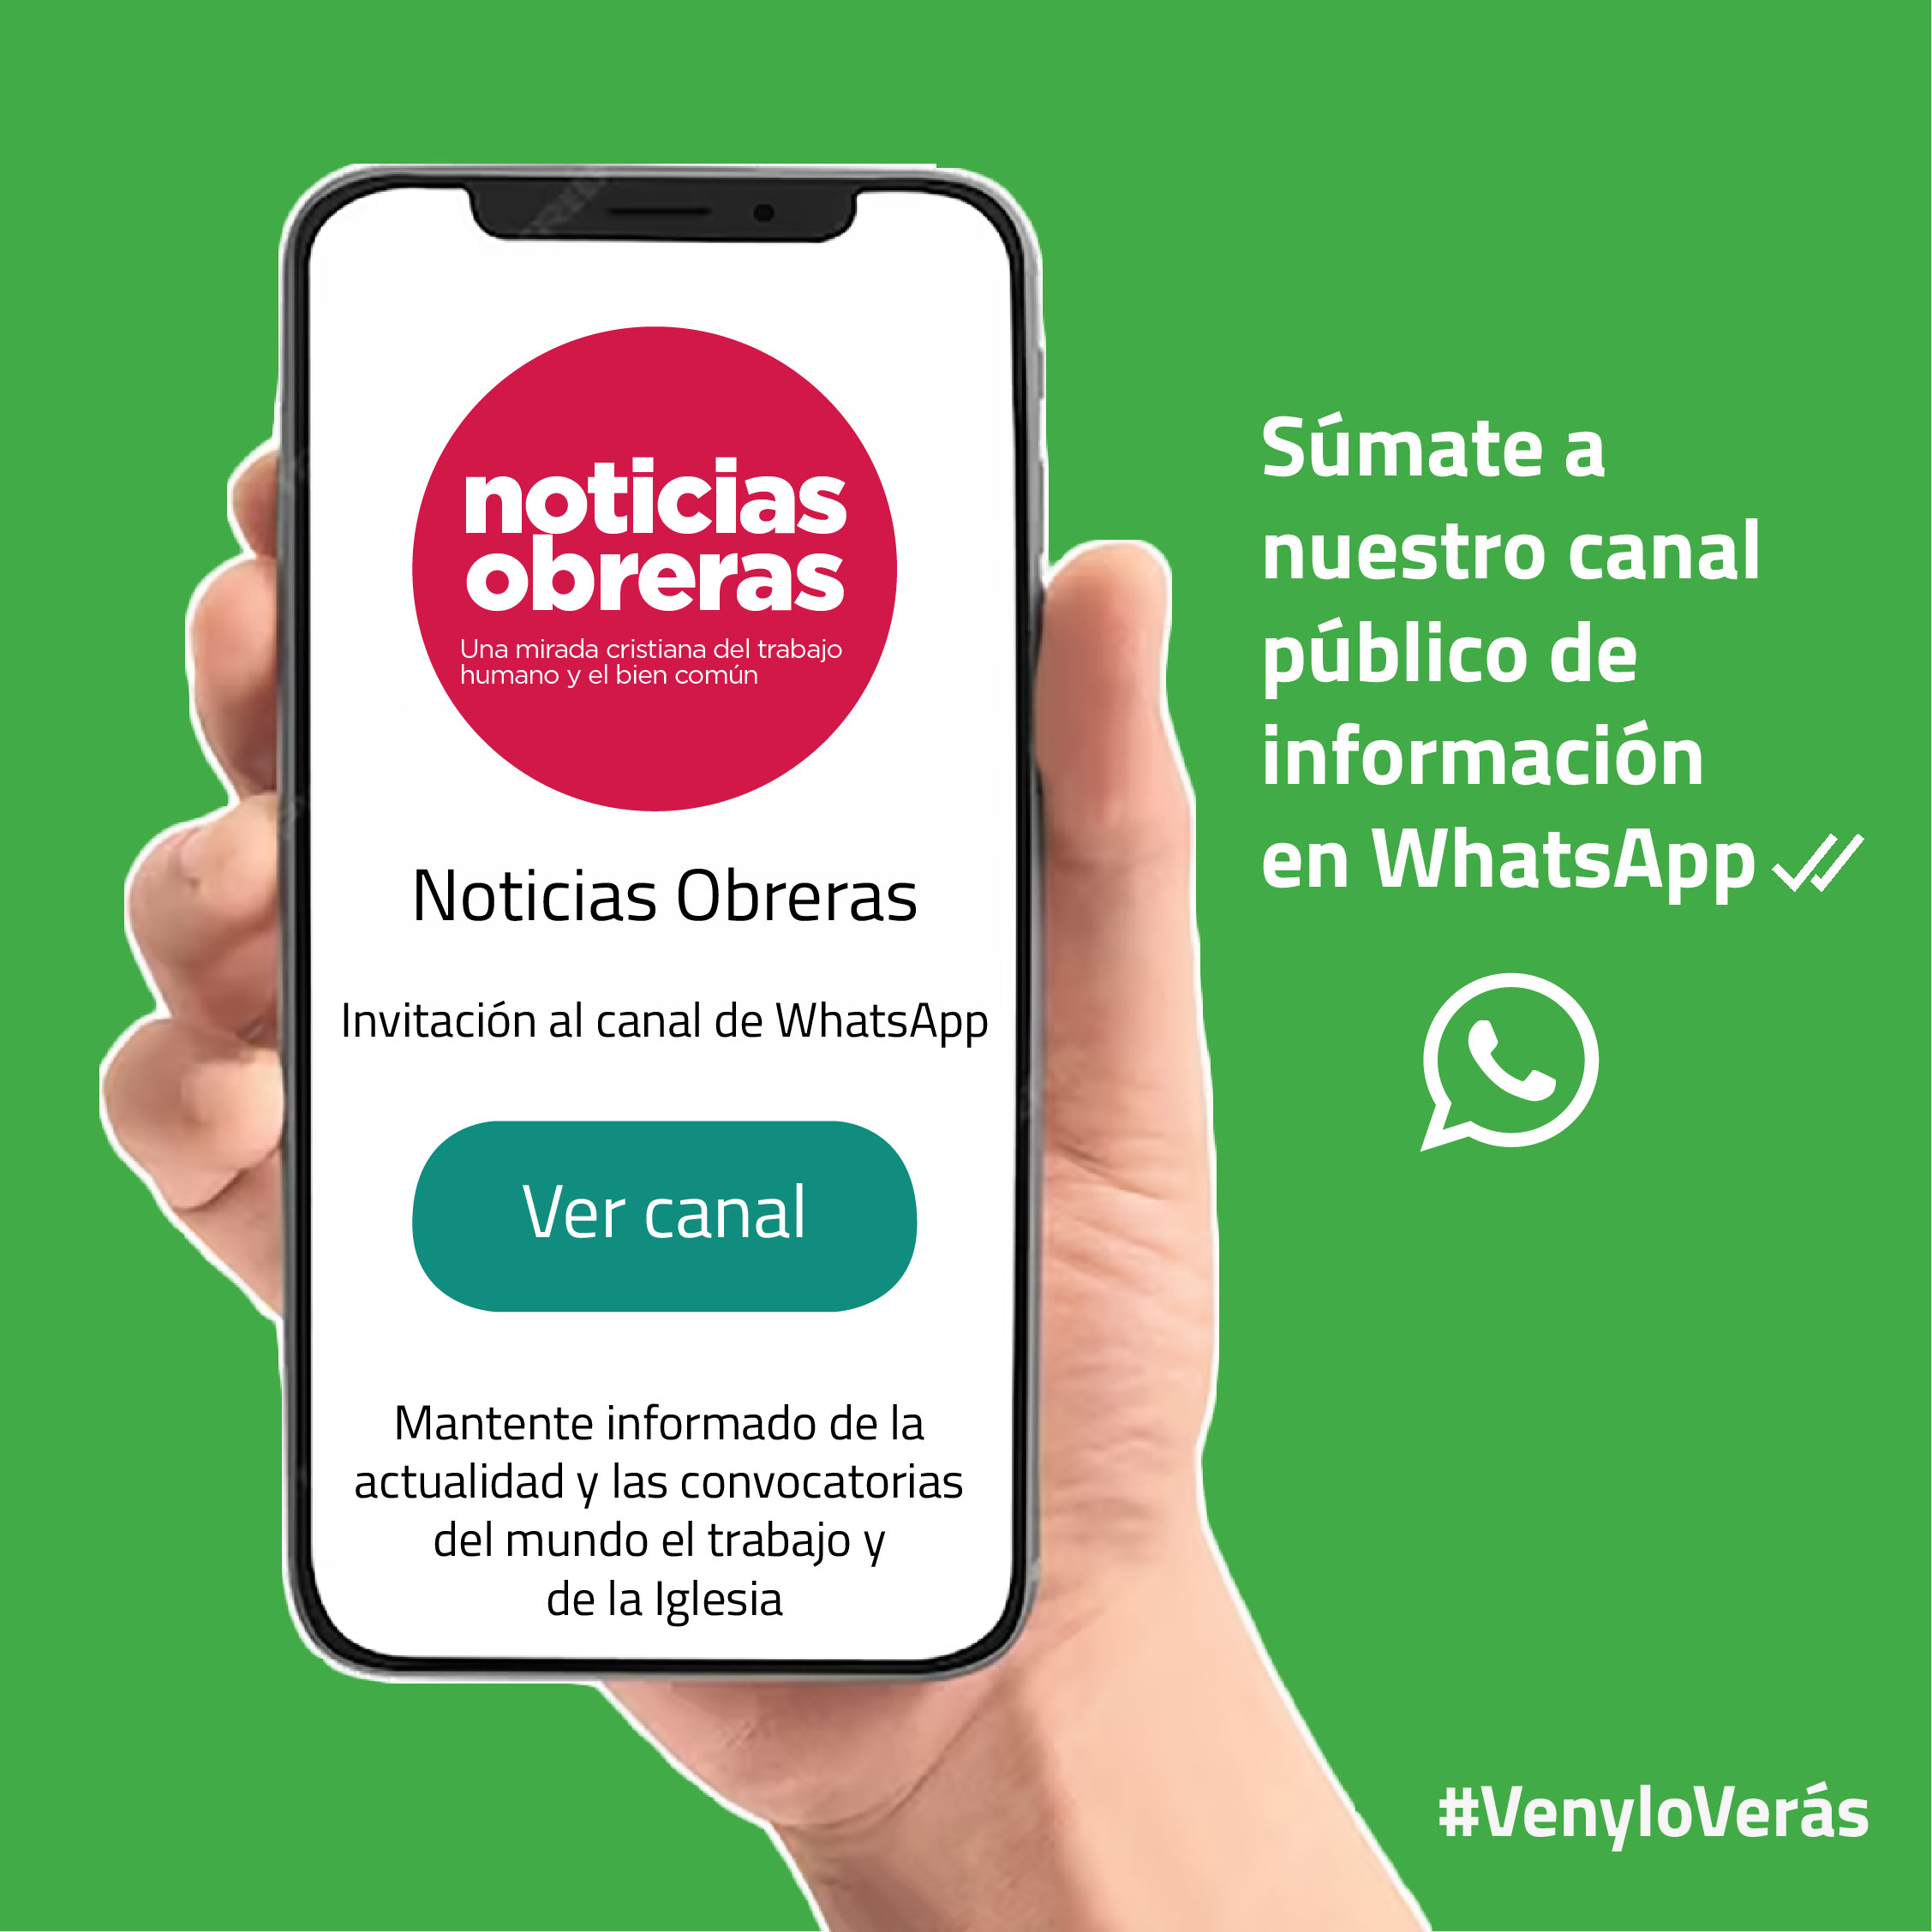 Noticias Obreras abre su canal público en WhatsApp